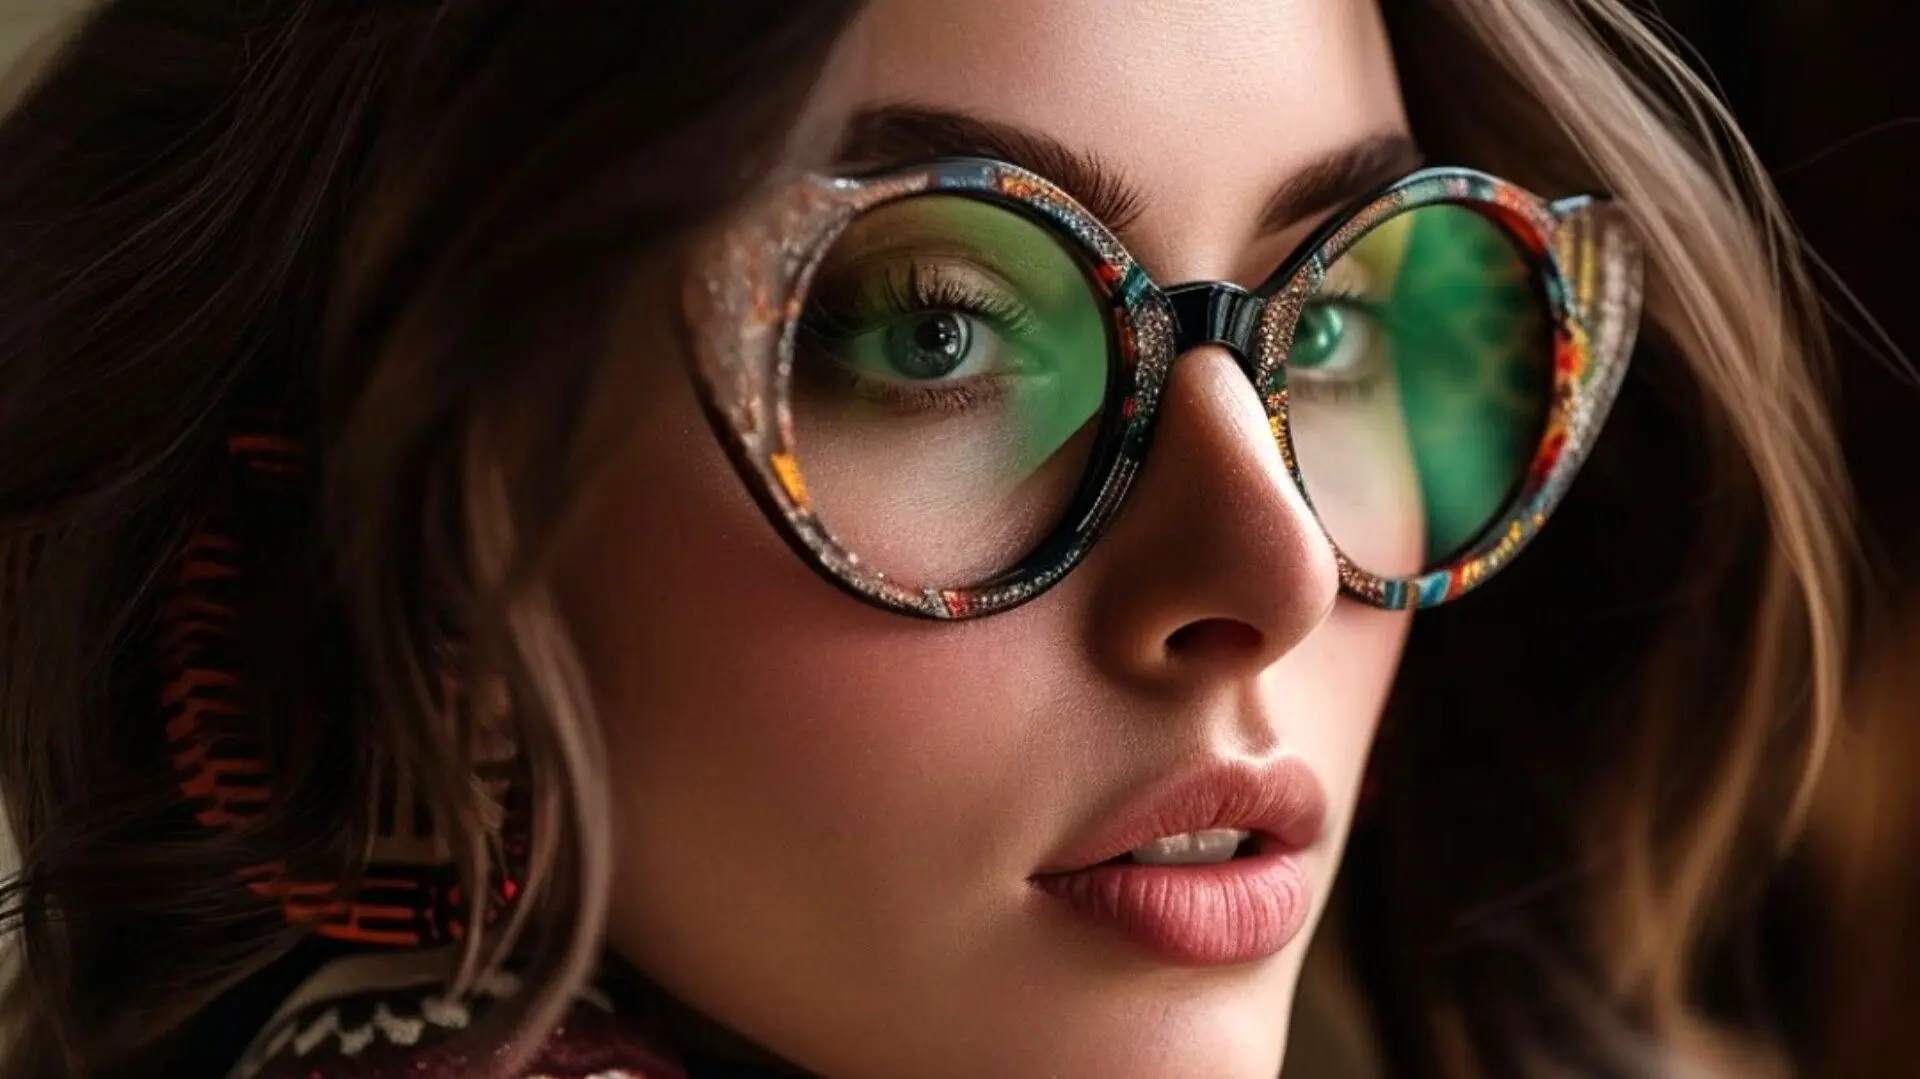 زیباترین فریم های عینک با نقش و نگار ایرانی؛ مخصوص خاص پسندها! + تصاویر